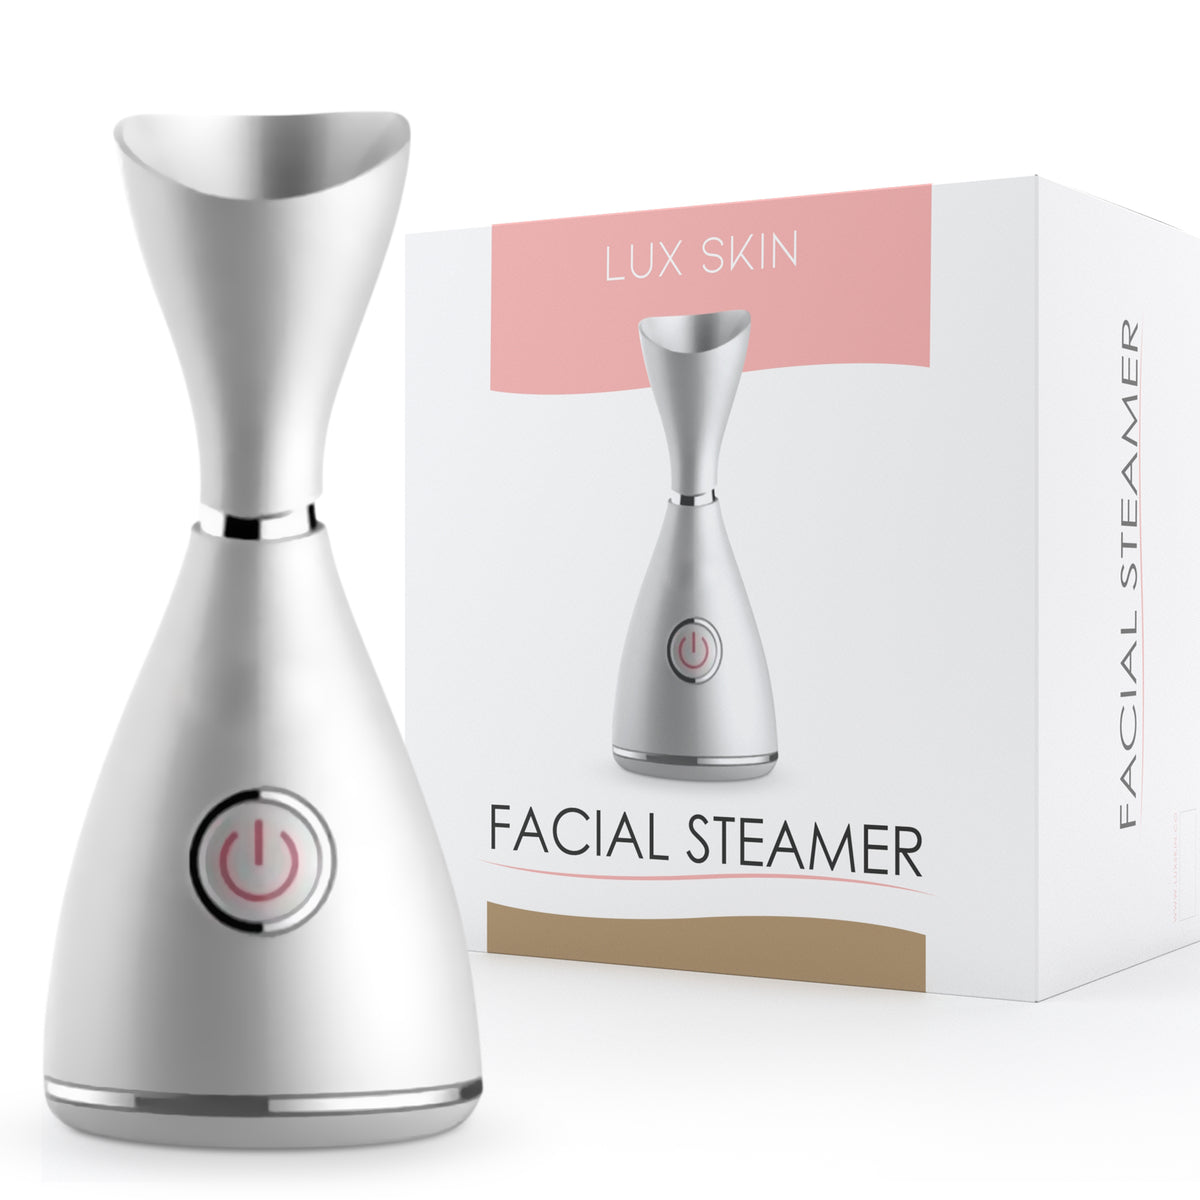 Lifelong Facial Steamer For Clogged Pores, Acne, Skin Care,, 45% OFF